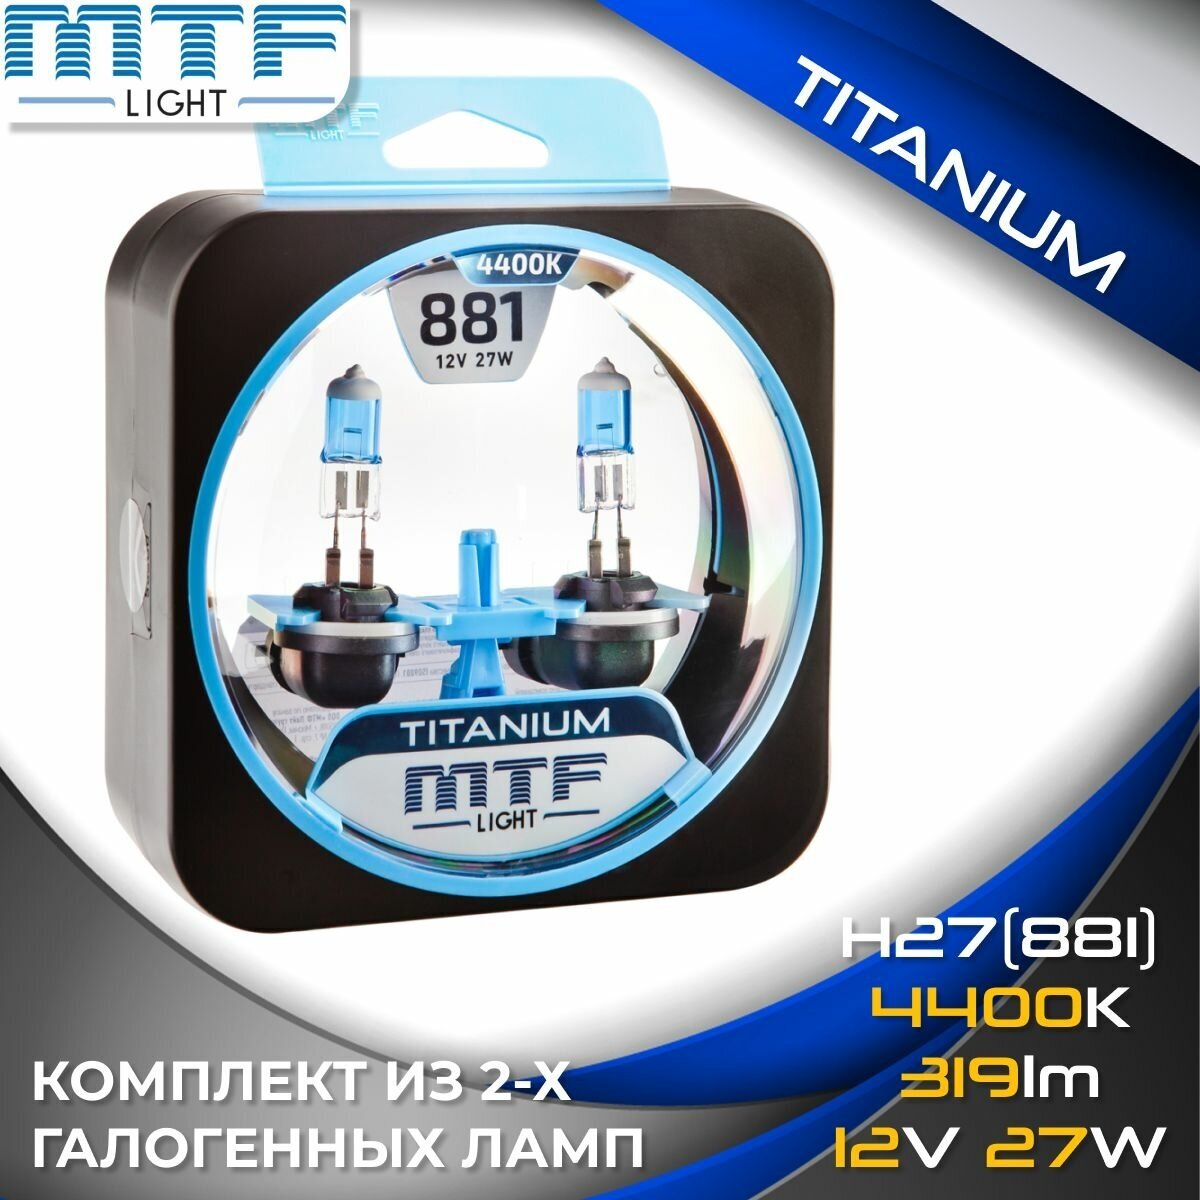 Галогенные автолампы MTF Light серия TITANIUM Н27(881), 12V, 27W (комплект 2 шт.)